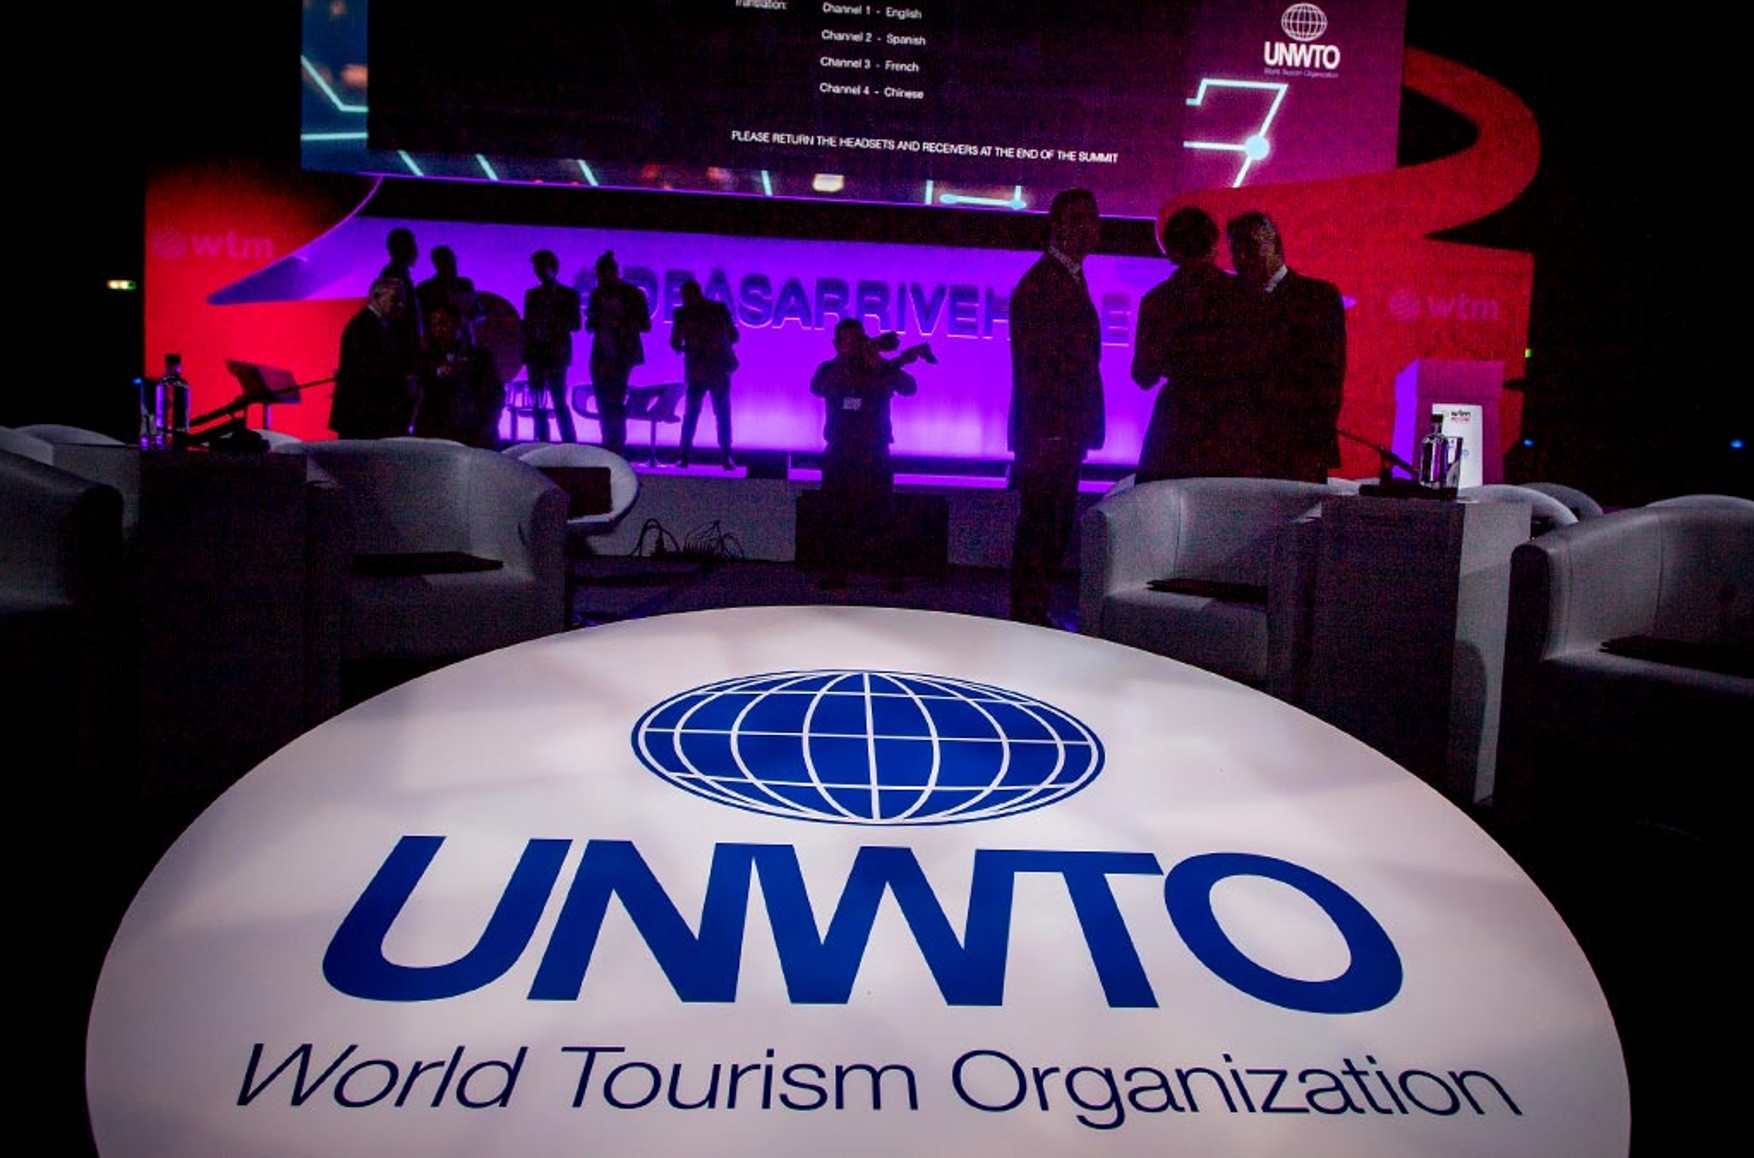 Россия выходит из состава Всемирной туристской организации ООН 